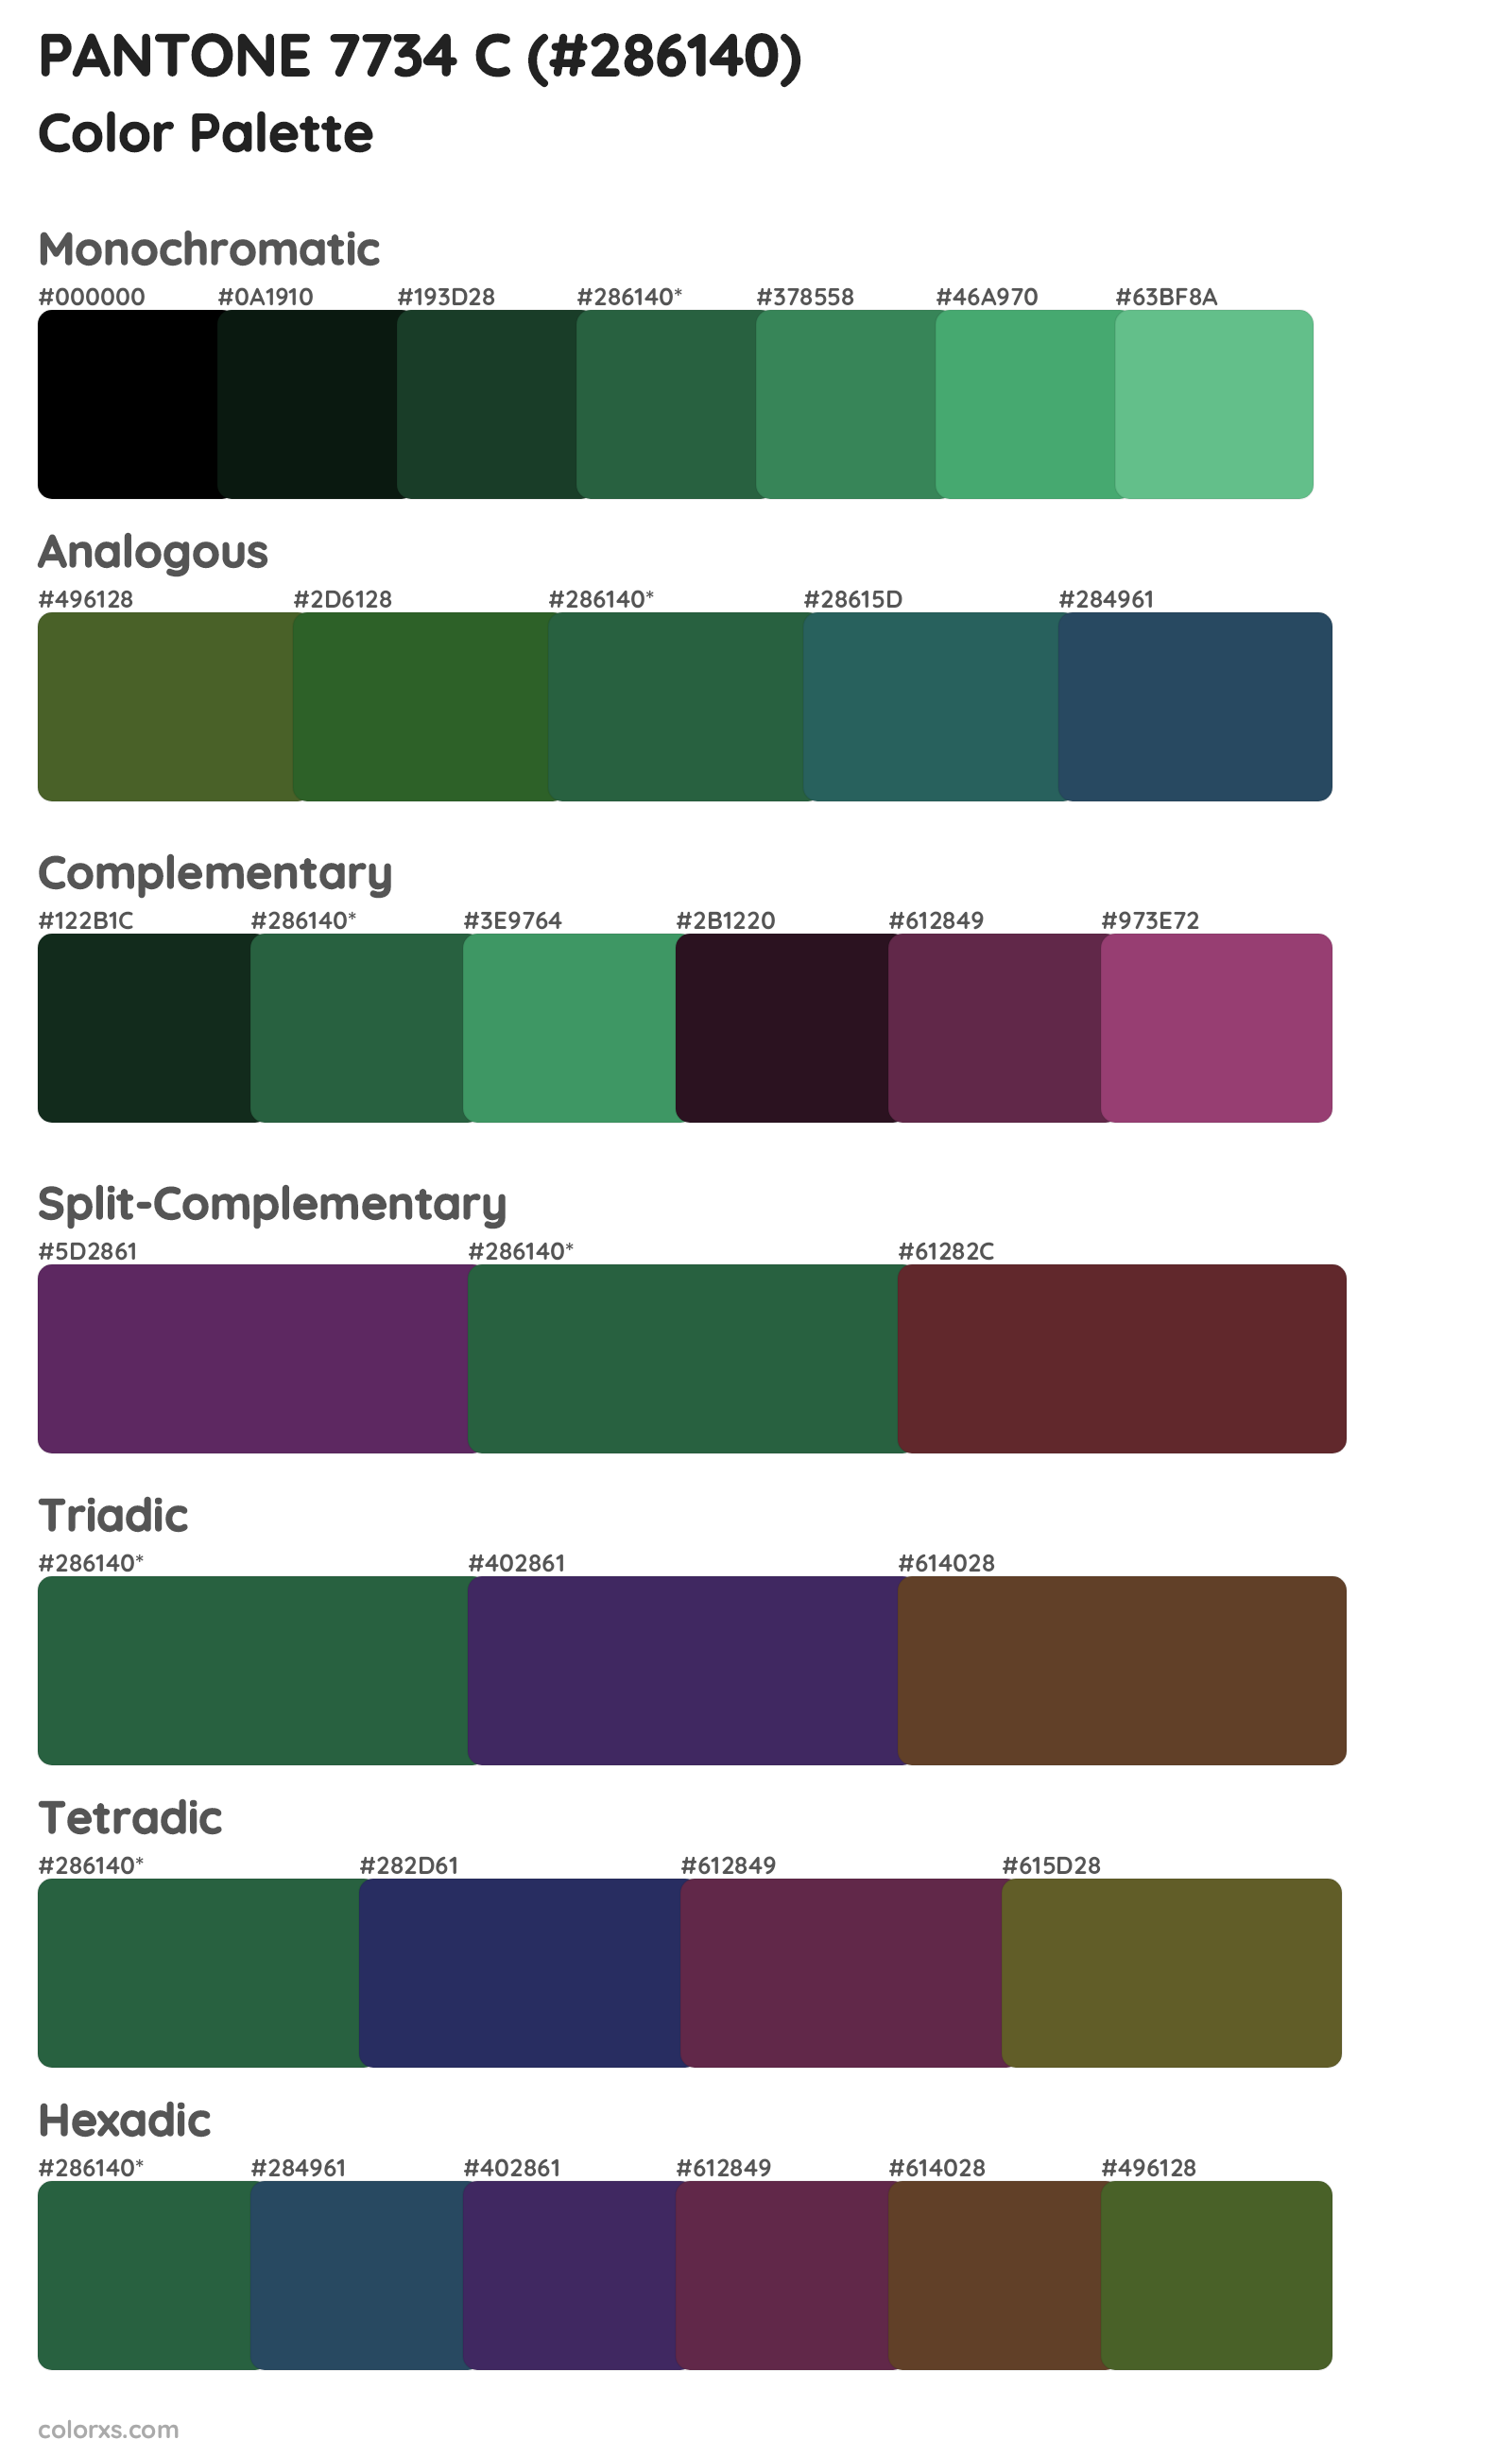 PANTONE 7734 C Color Scheme Palettes